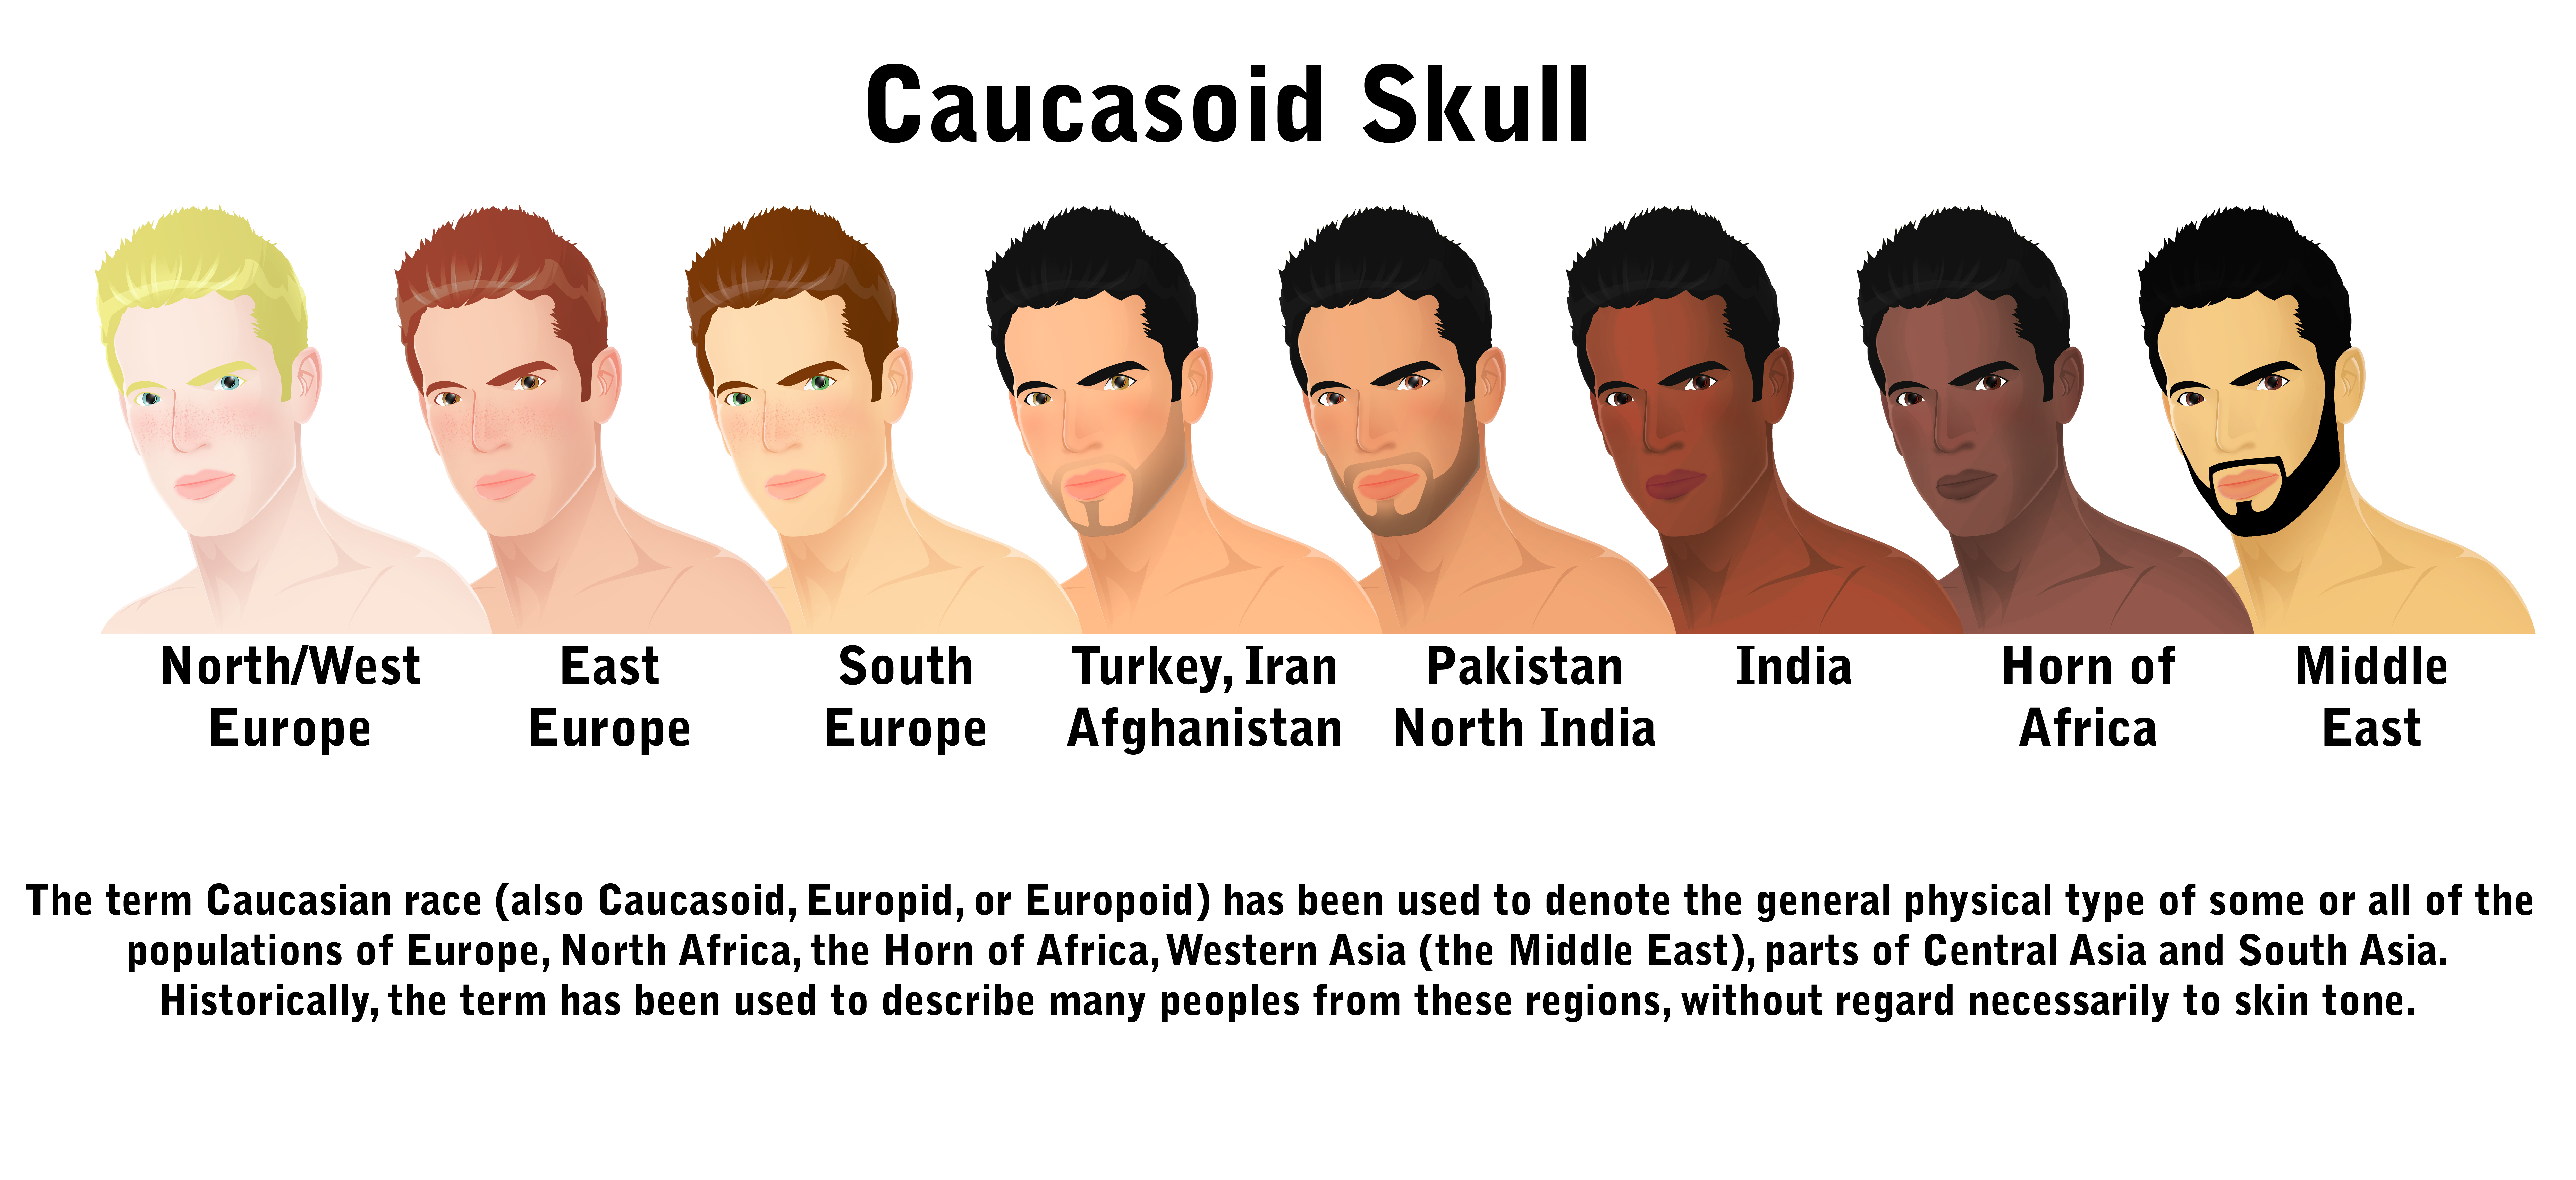 Caucasoid skull